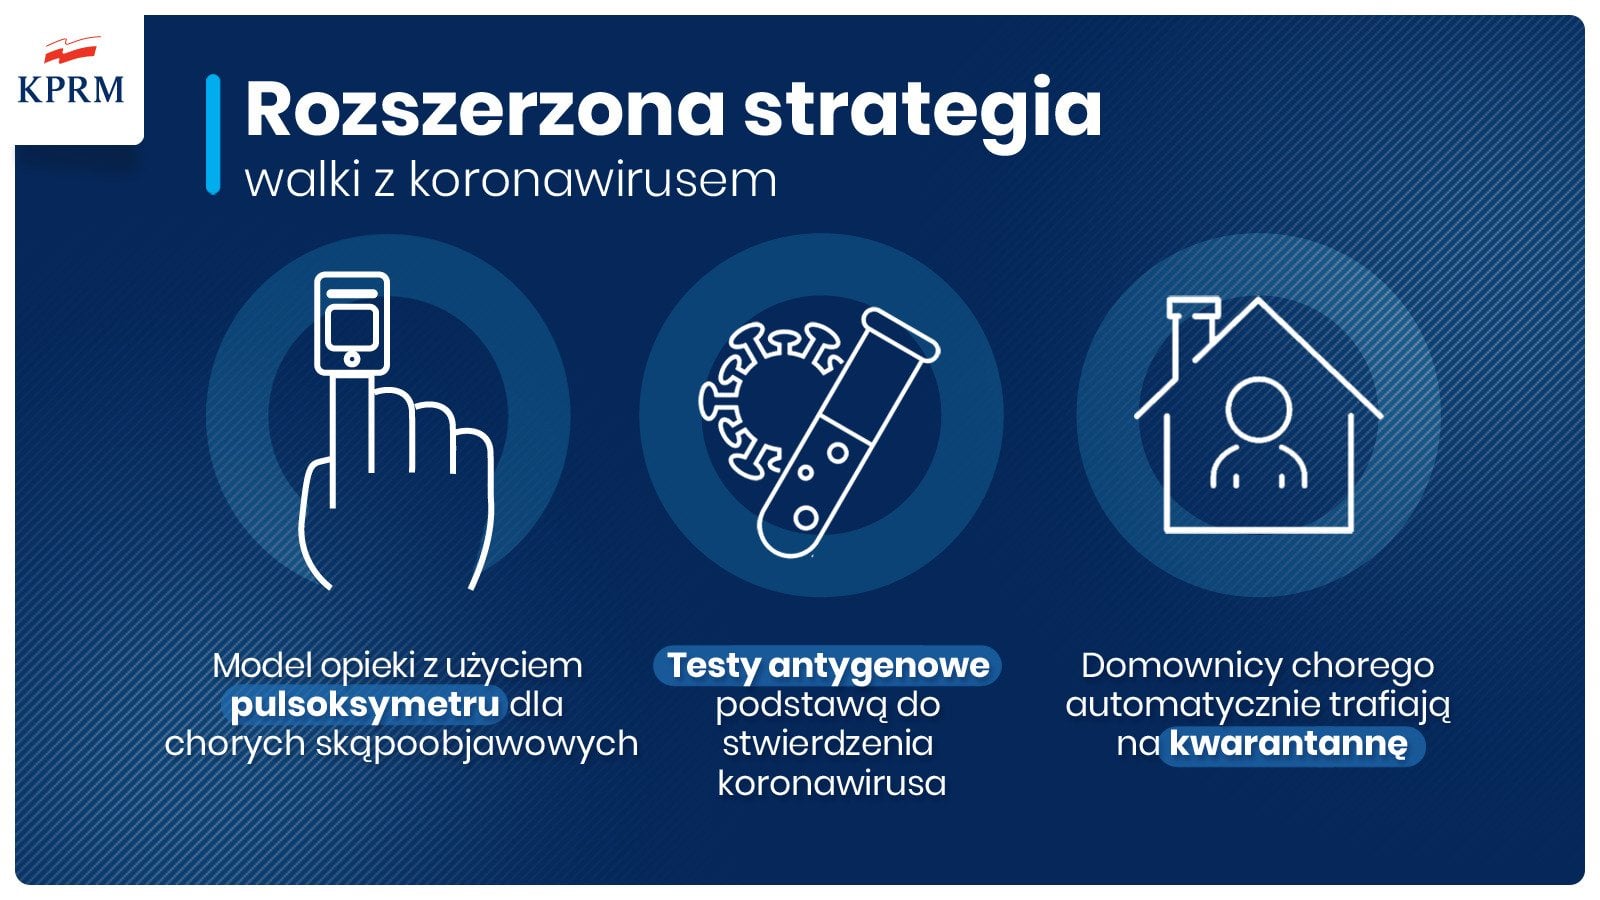 Plakat przedstawia nową strategię do walki z koronawirusem, która zakłada: Użycie pulsoksymetru dla szybkiego diagozowania pacjentów skąpoobjawowych. Testy antygenowe jako podstawę stwierdzenia zakażenia koronawirusem.  Nowe zasady kwarantanny.